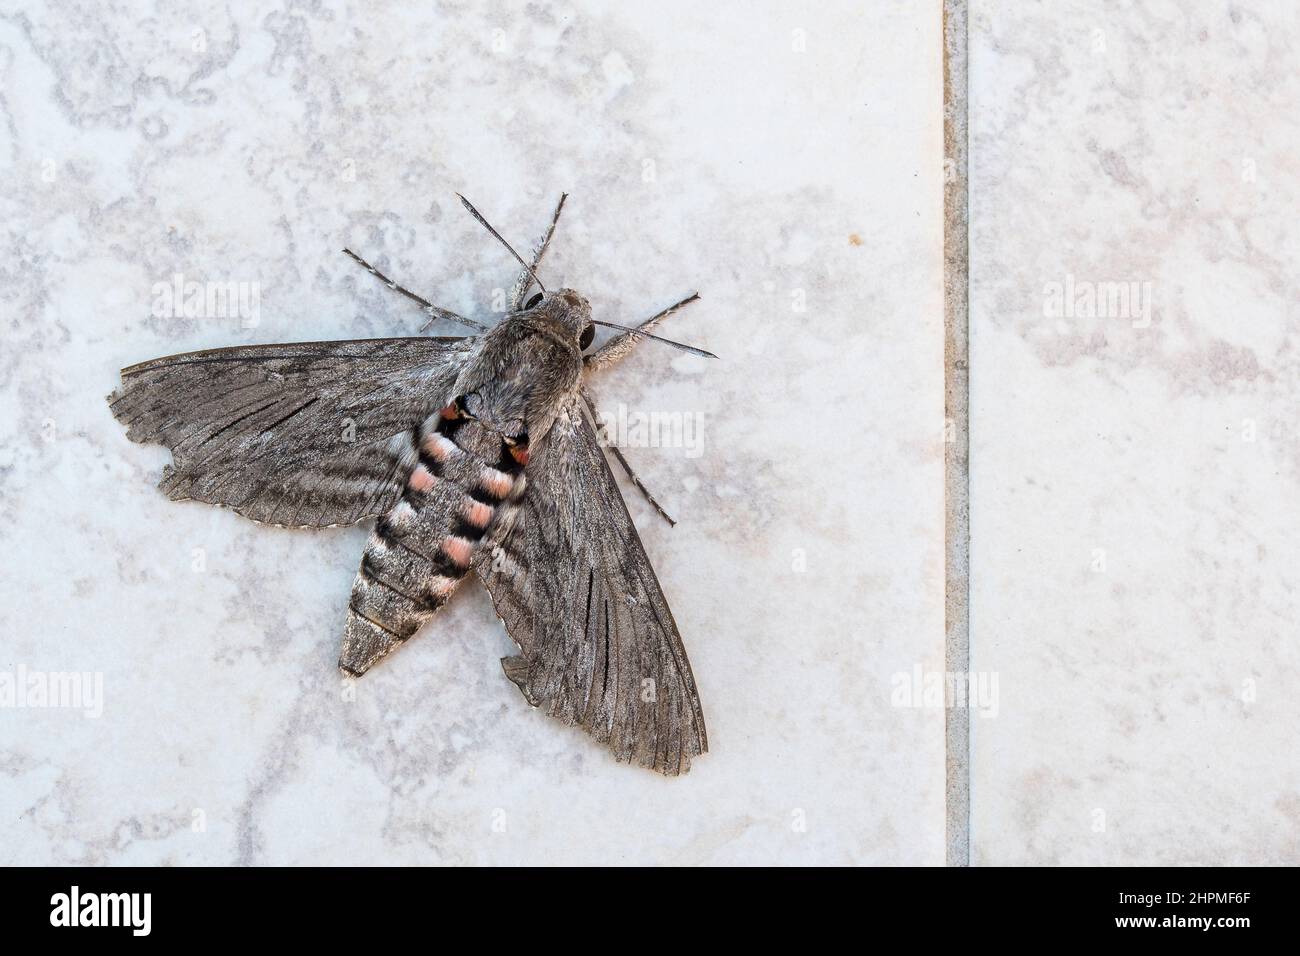 Convolvulus hawk-moth (Agrius convolvuli). Stock Photo